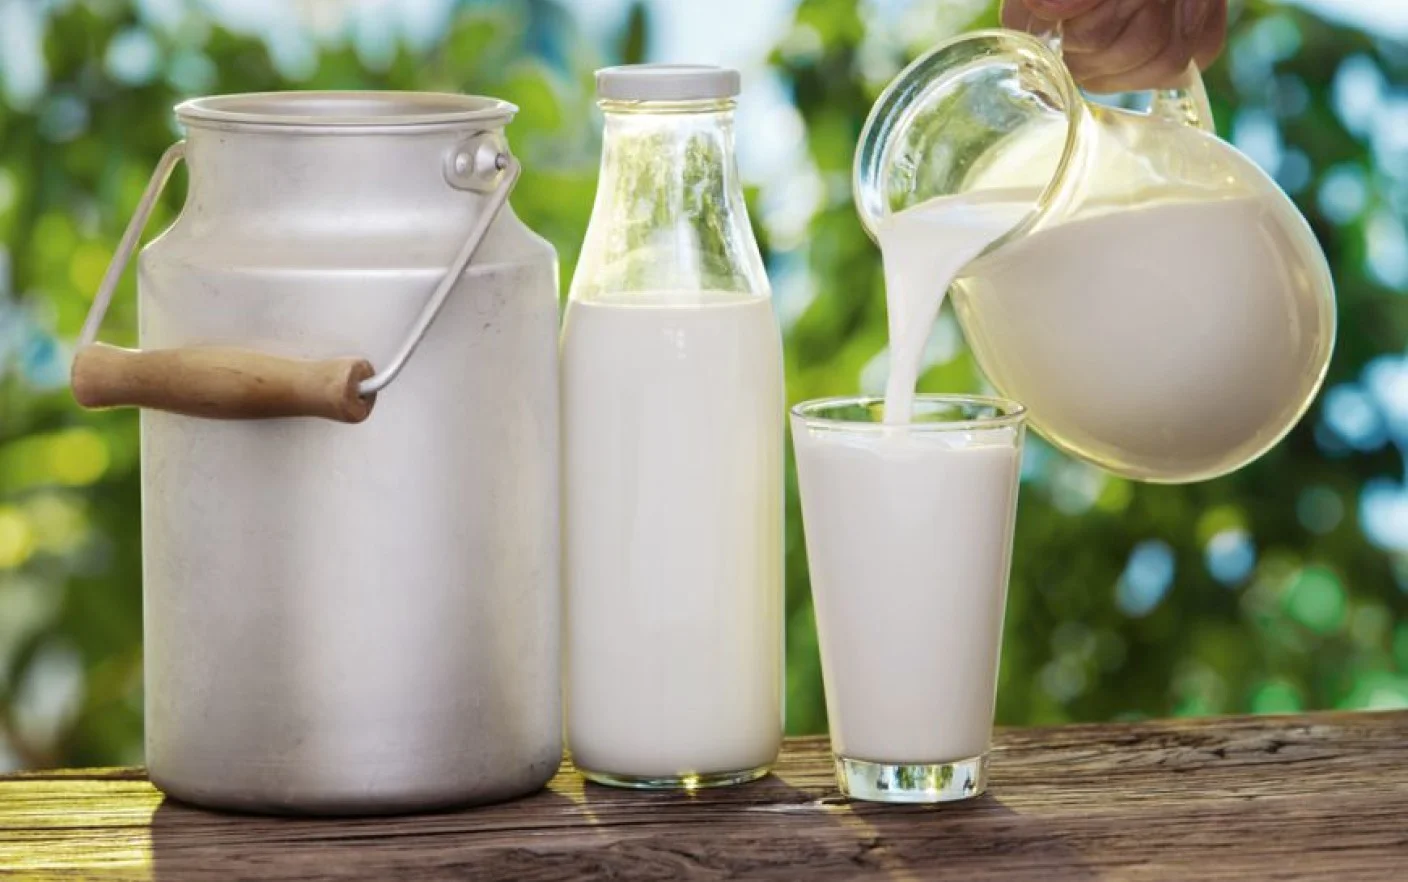 Nu mai avem nevoie de vaci pentru lapte adevărat. Produsele fabricate în laborator au devenit o realitate